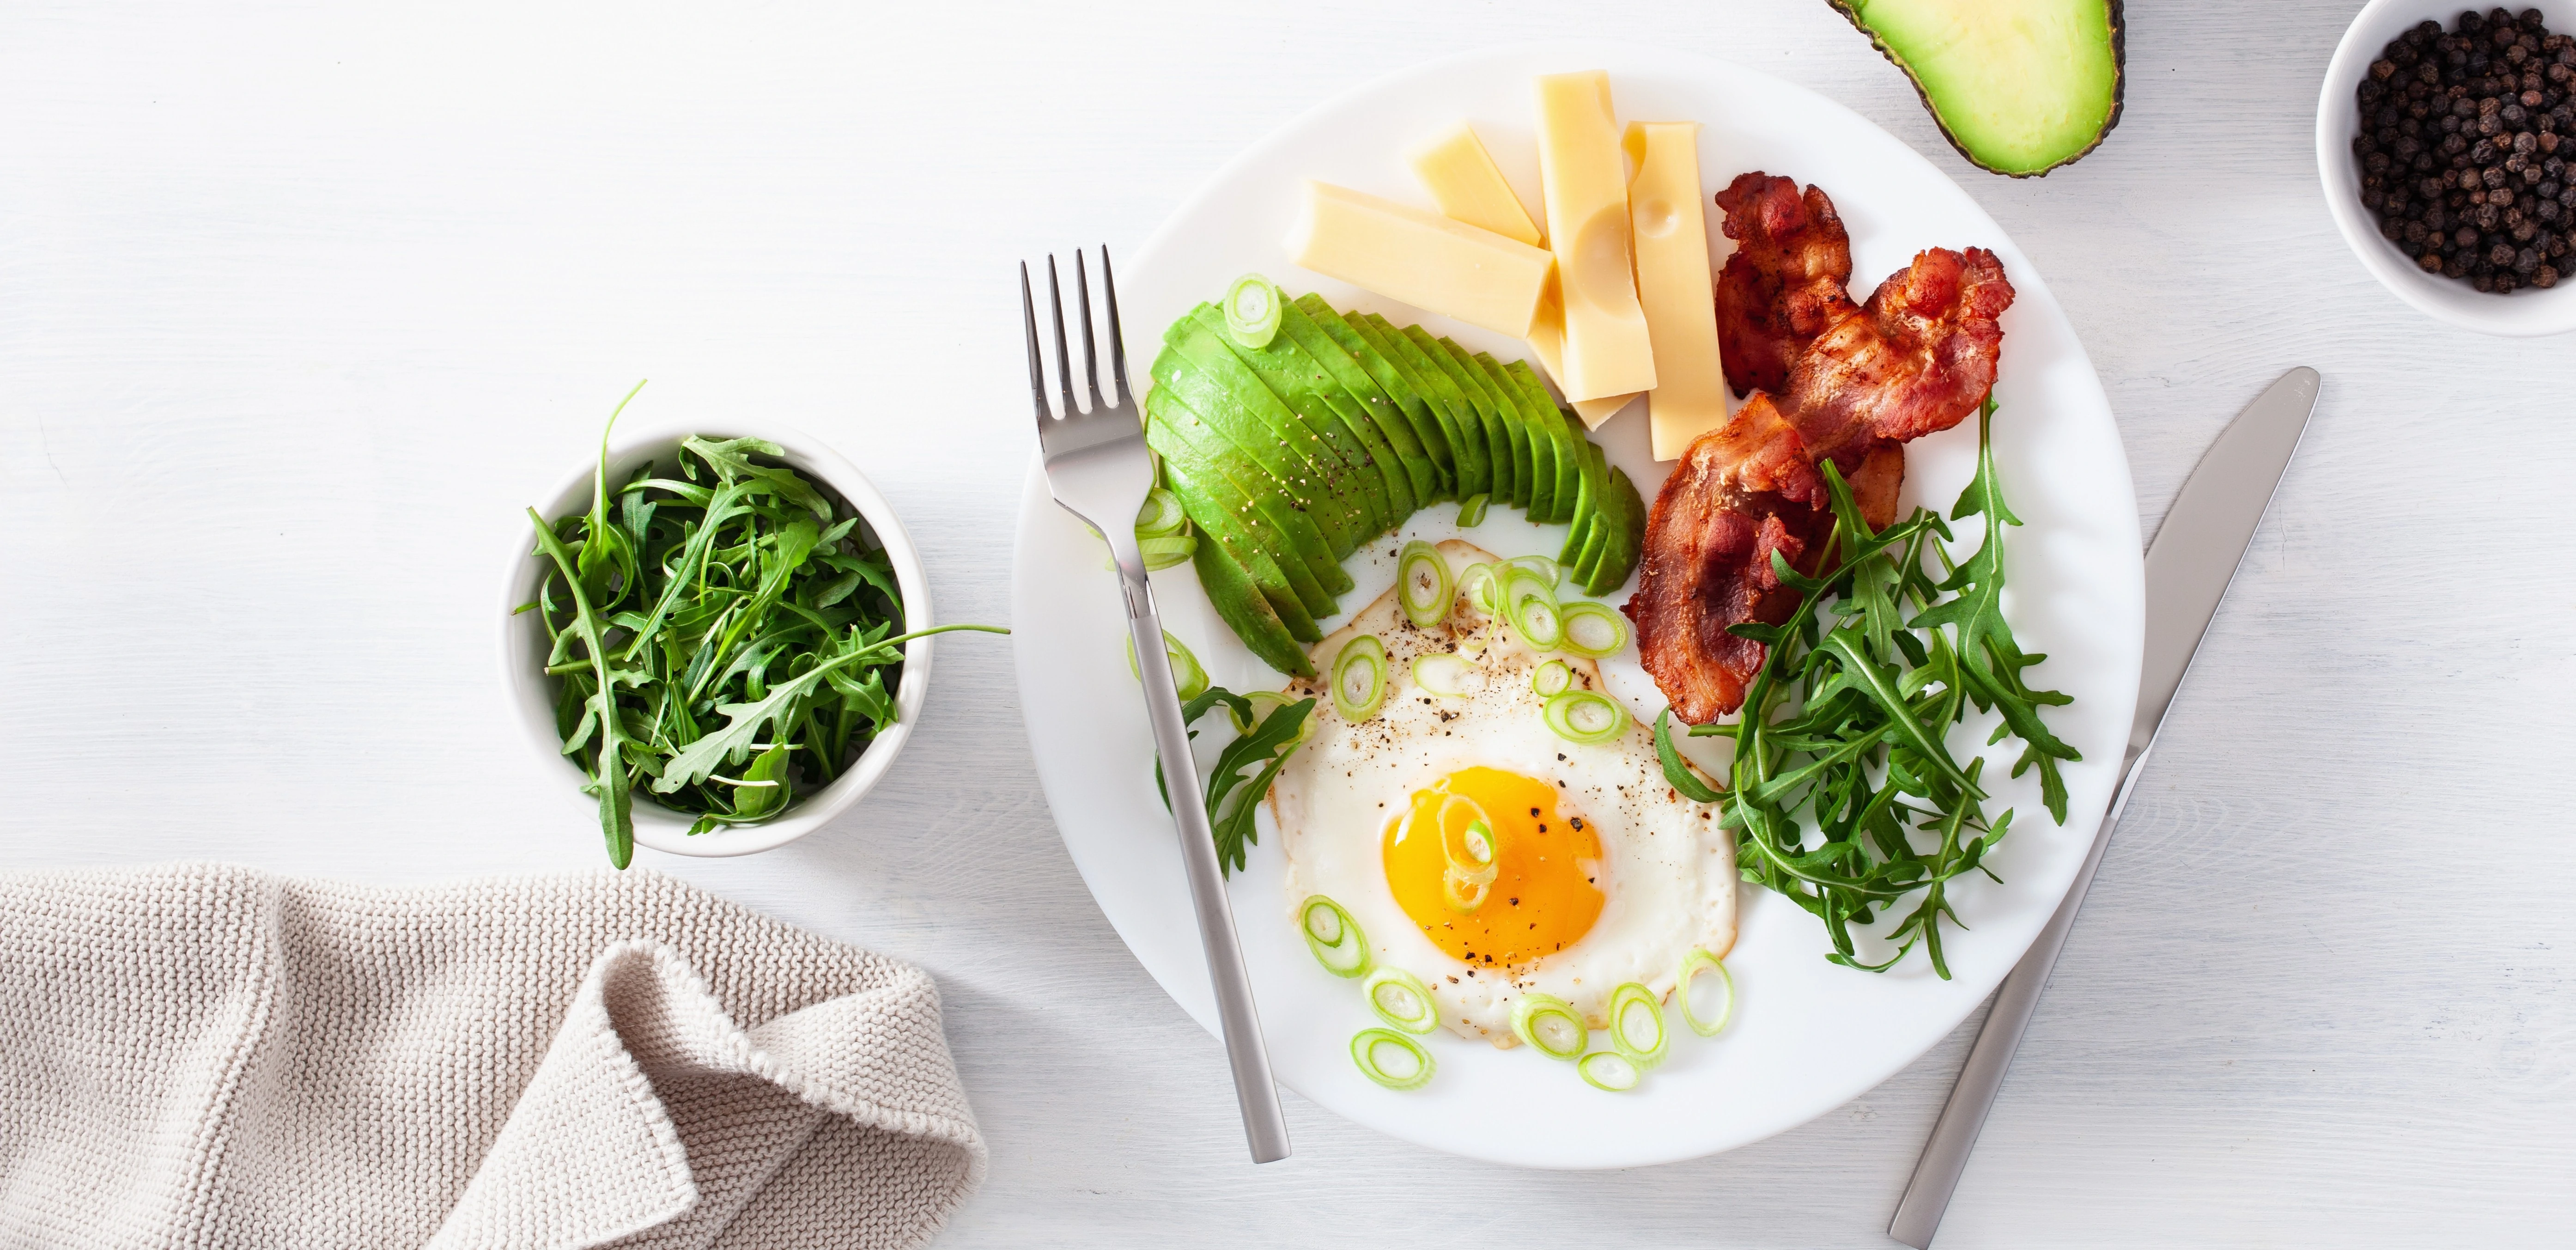 uova benefici e controindicazioni nella dieta